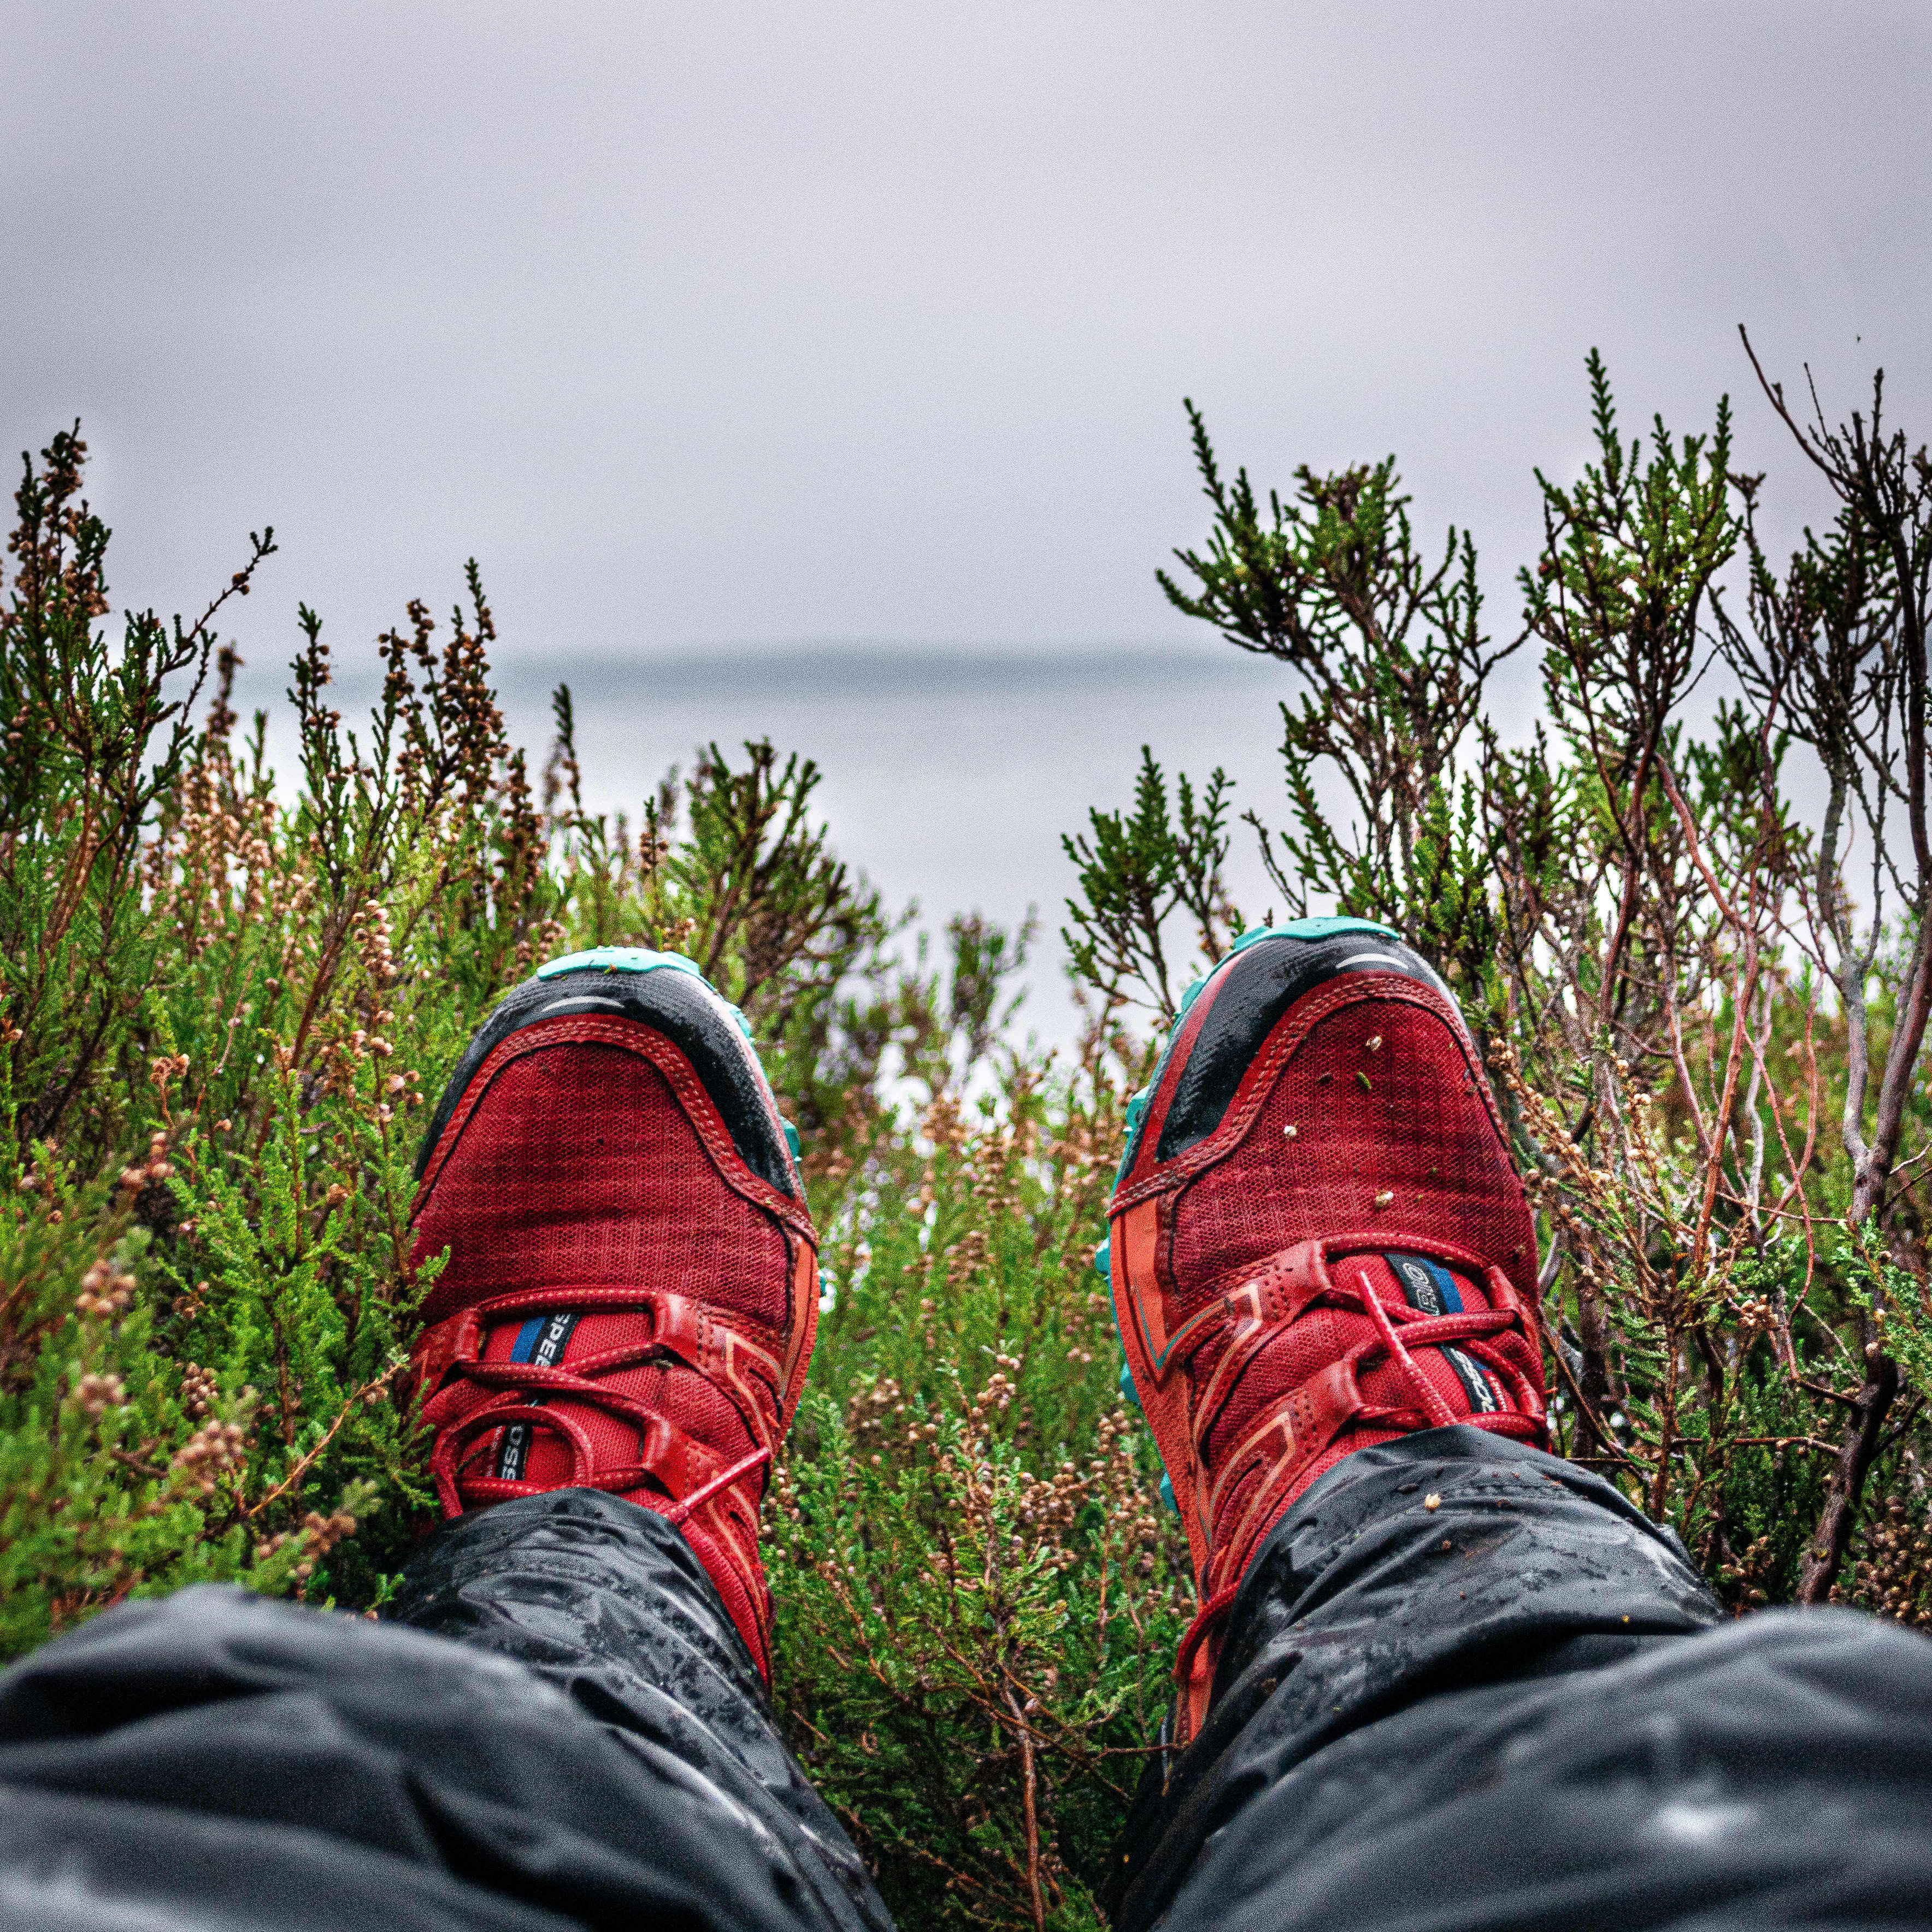 Perspektivet då du ligger under ett träd och tittar på skorna. Ljung och havet i bakgrunden.